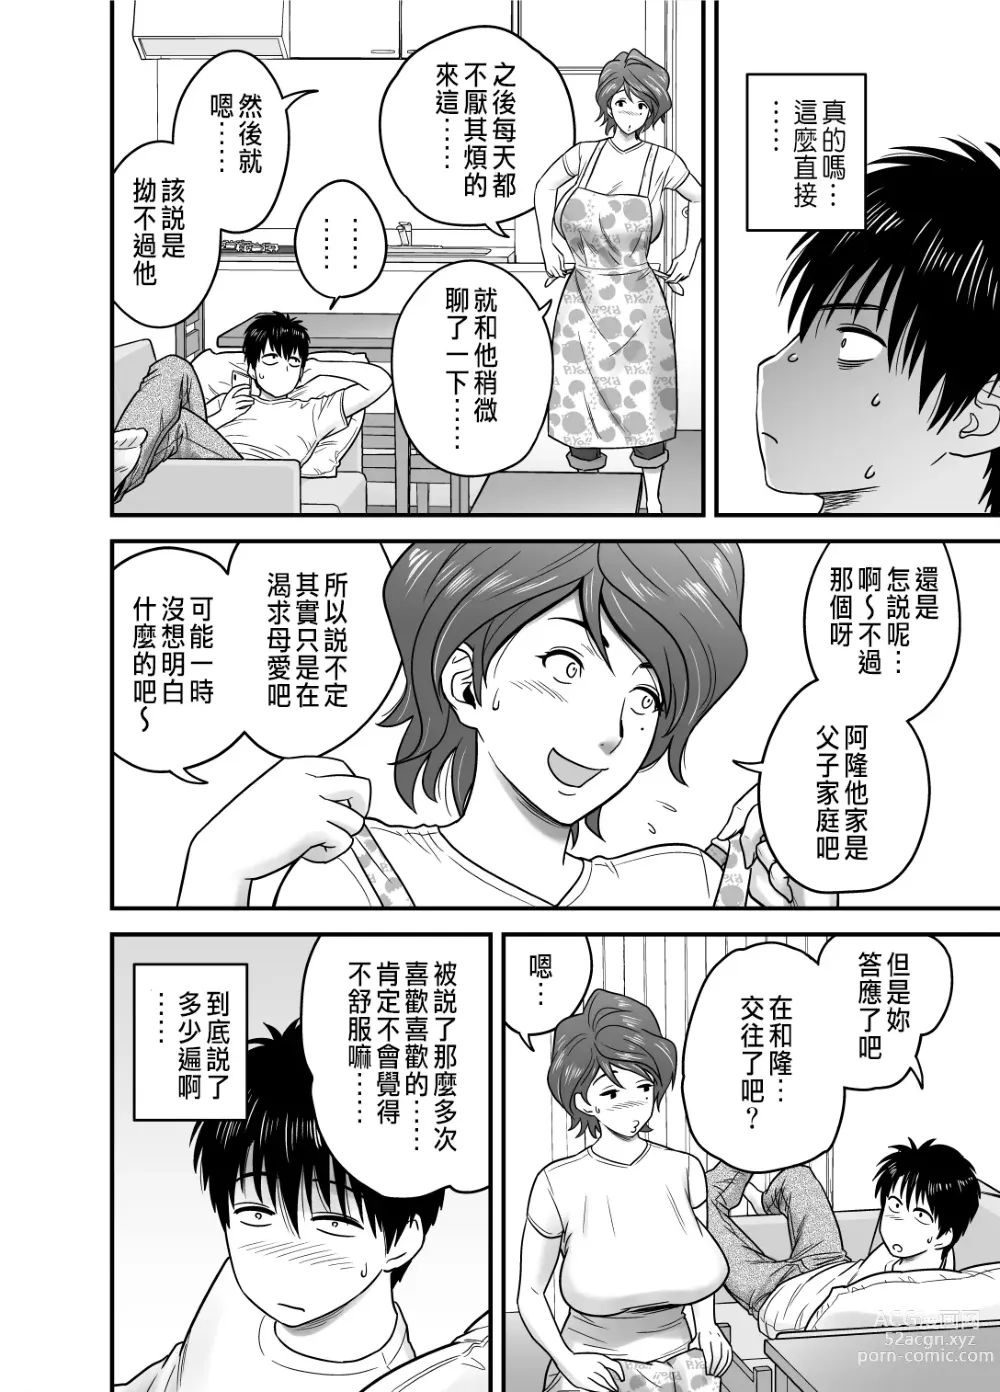 Page 10 of manga 母が友カノになったので1~3